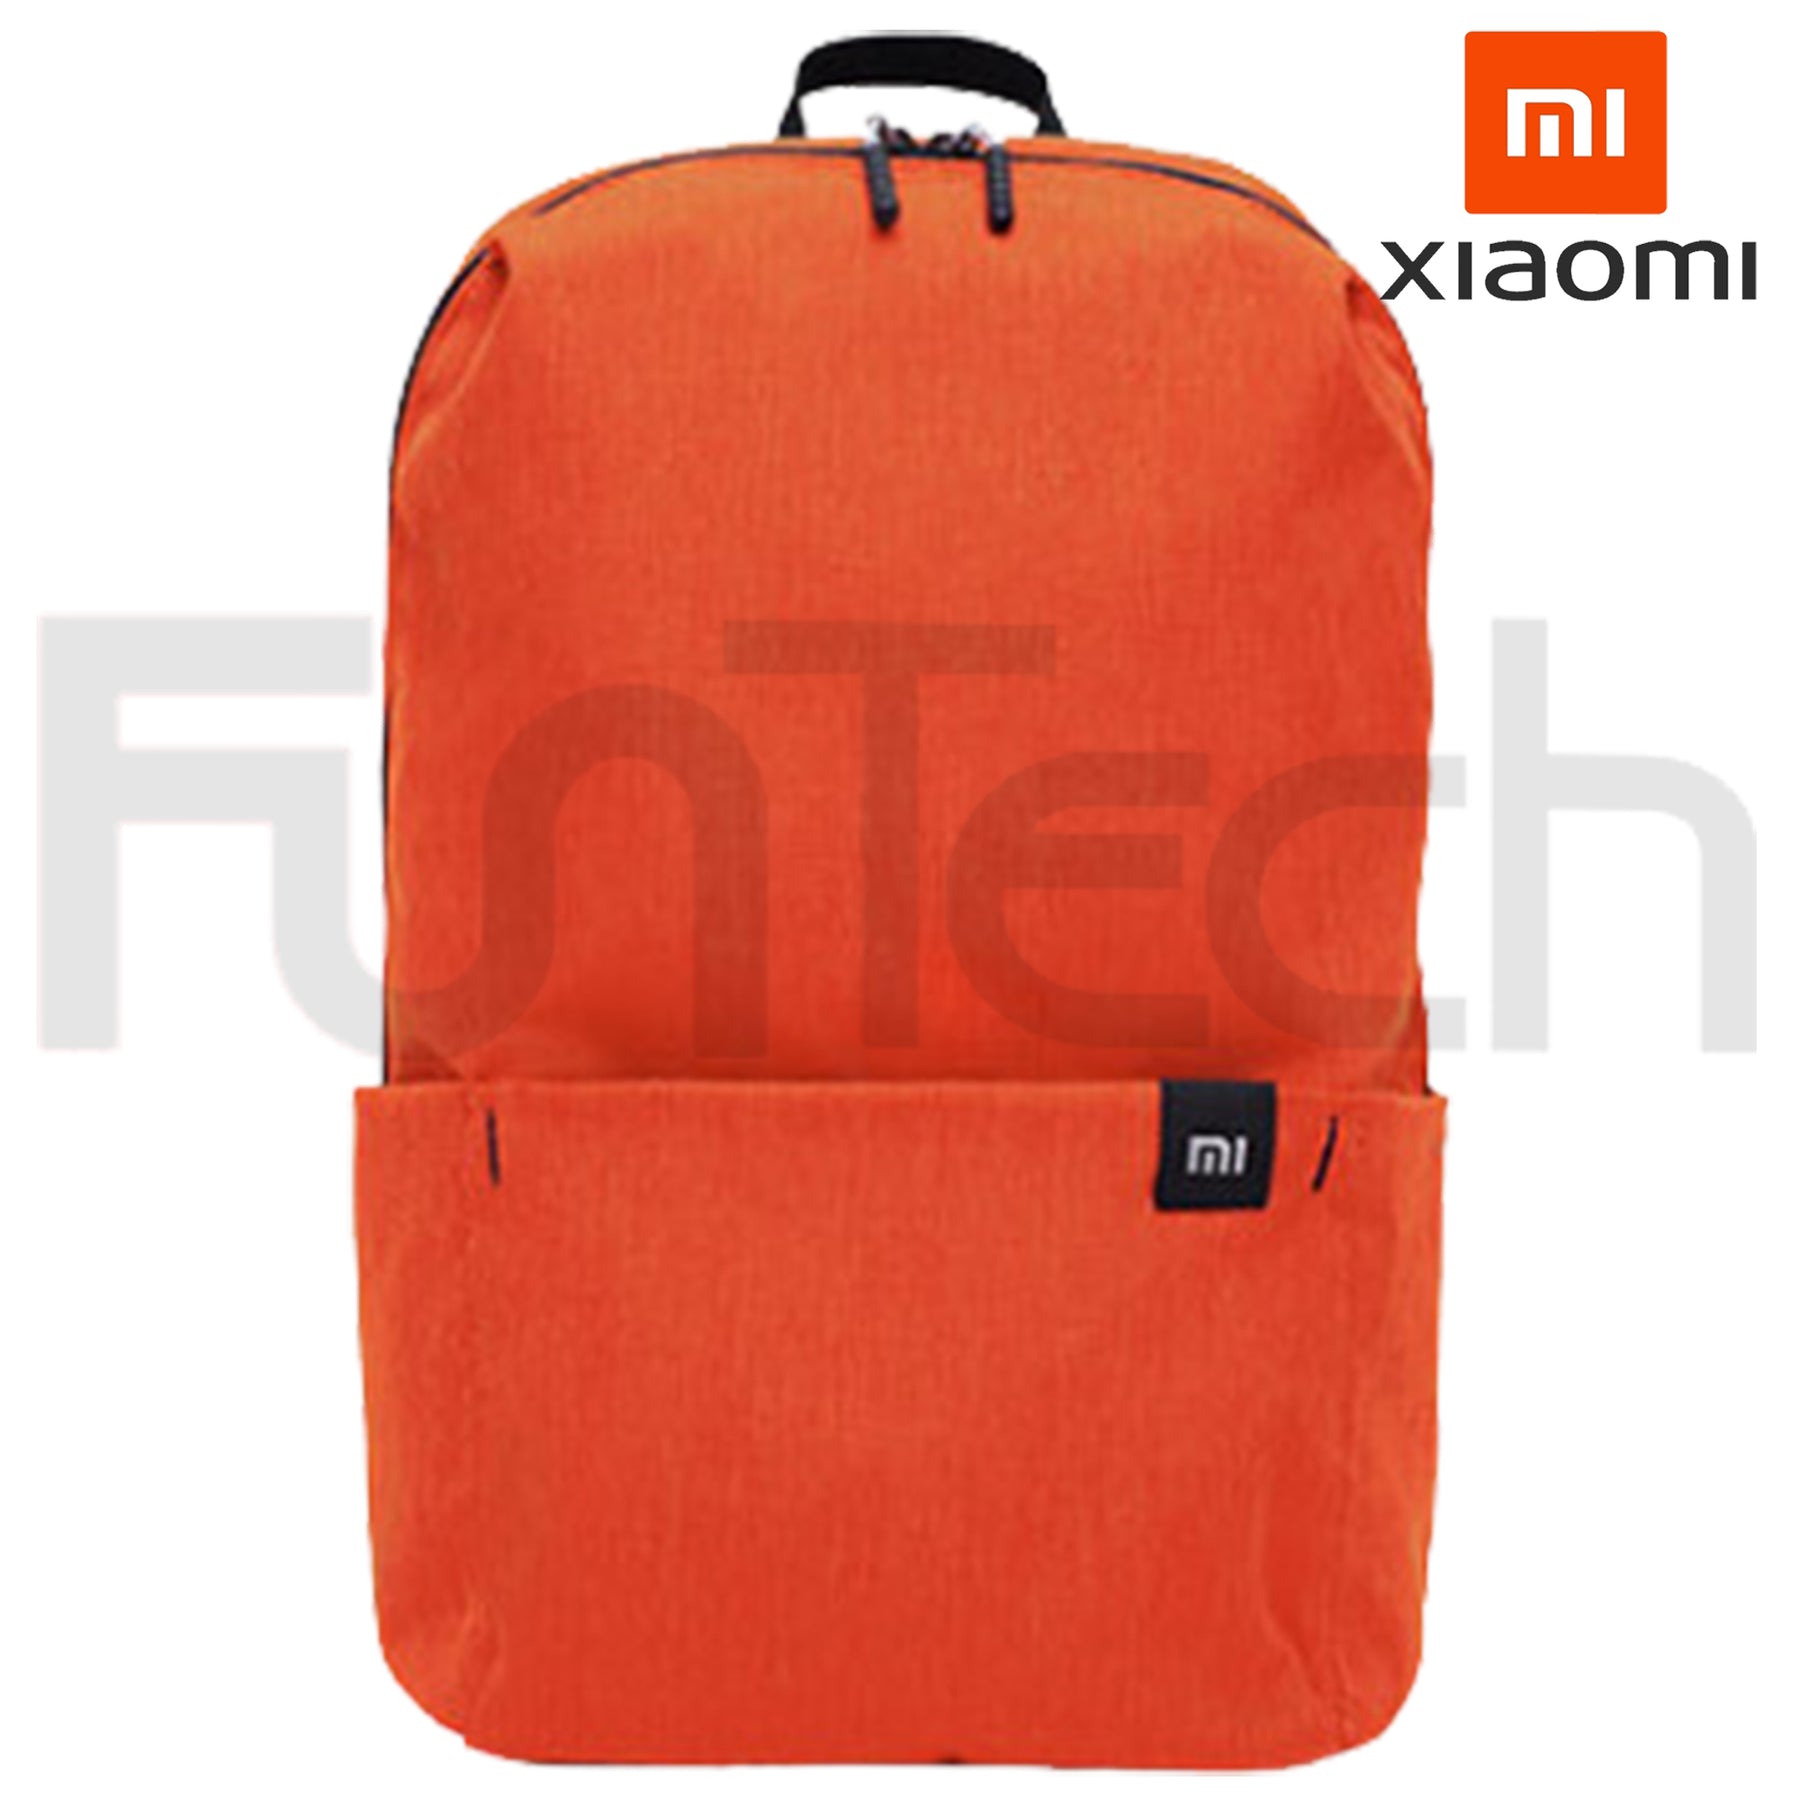 Xiaomi Mi Colorful Small Backpack 10L Orange